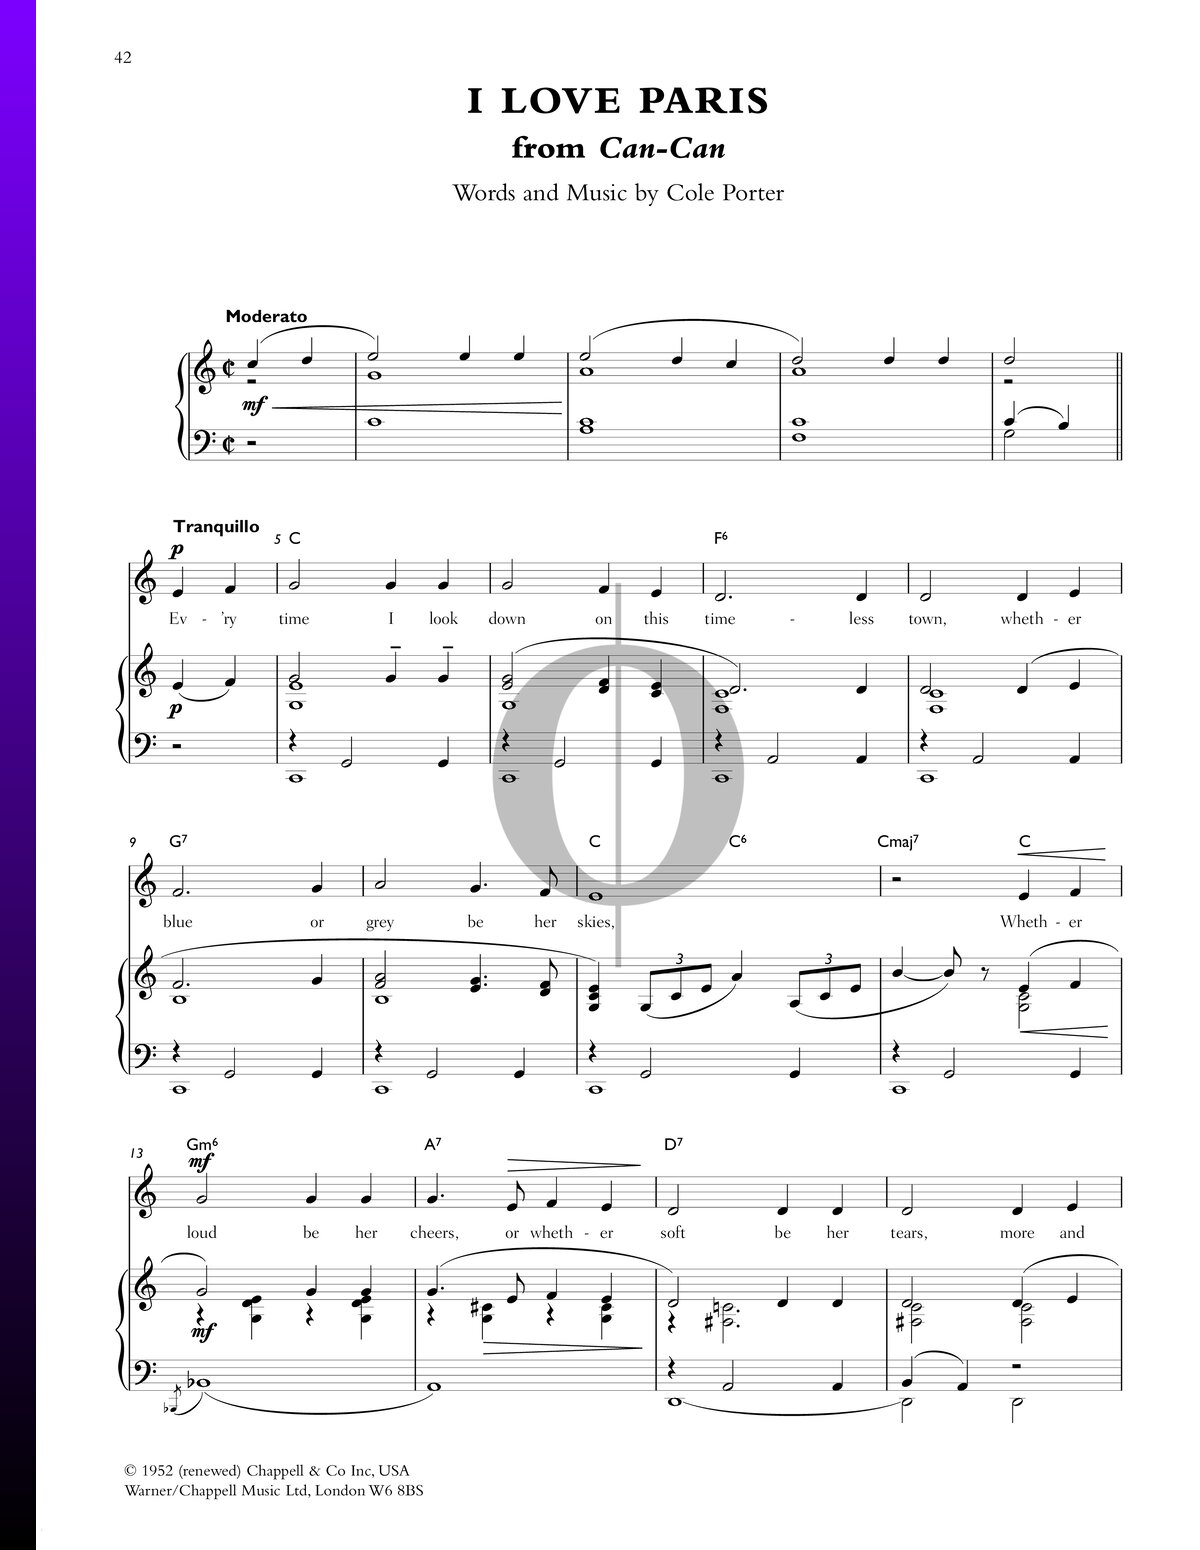 I Love Paris Sheet Music (Piano, Voice, Guitar) - OKTAV